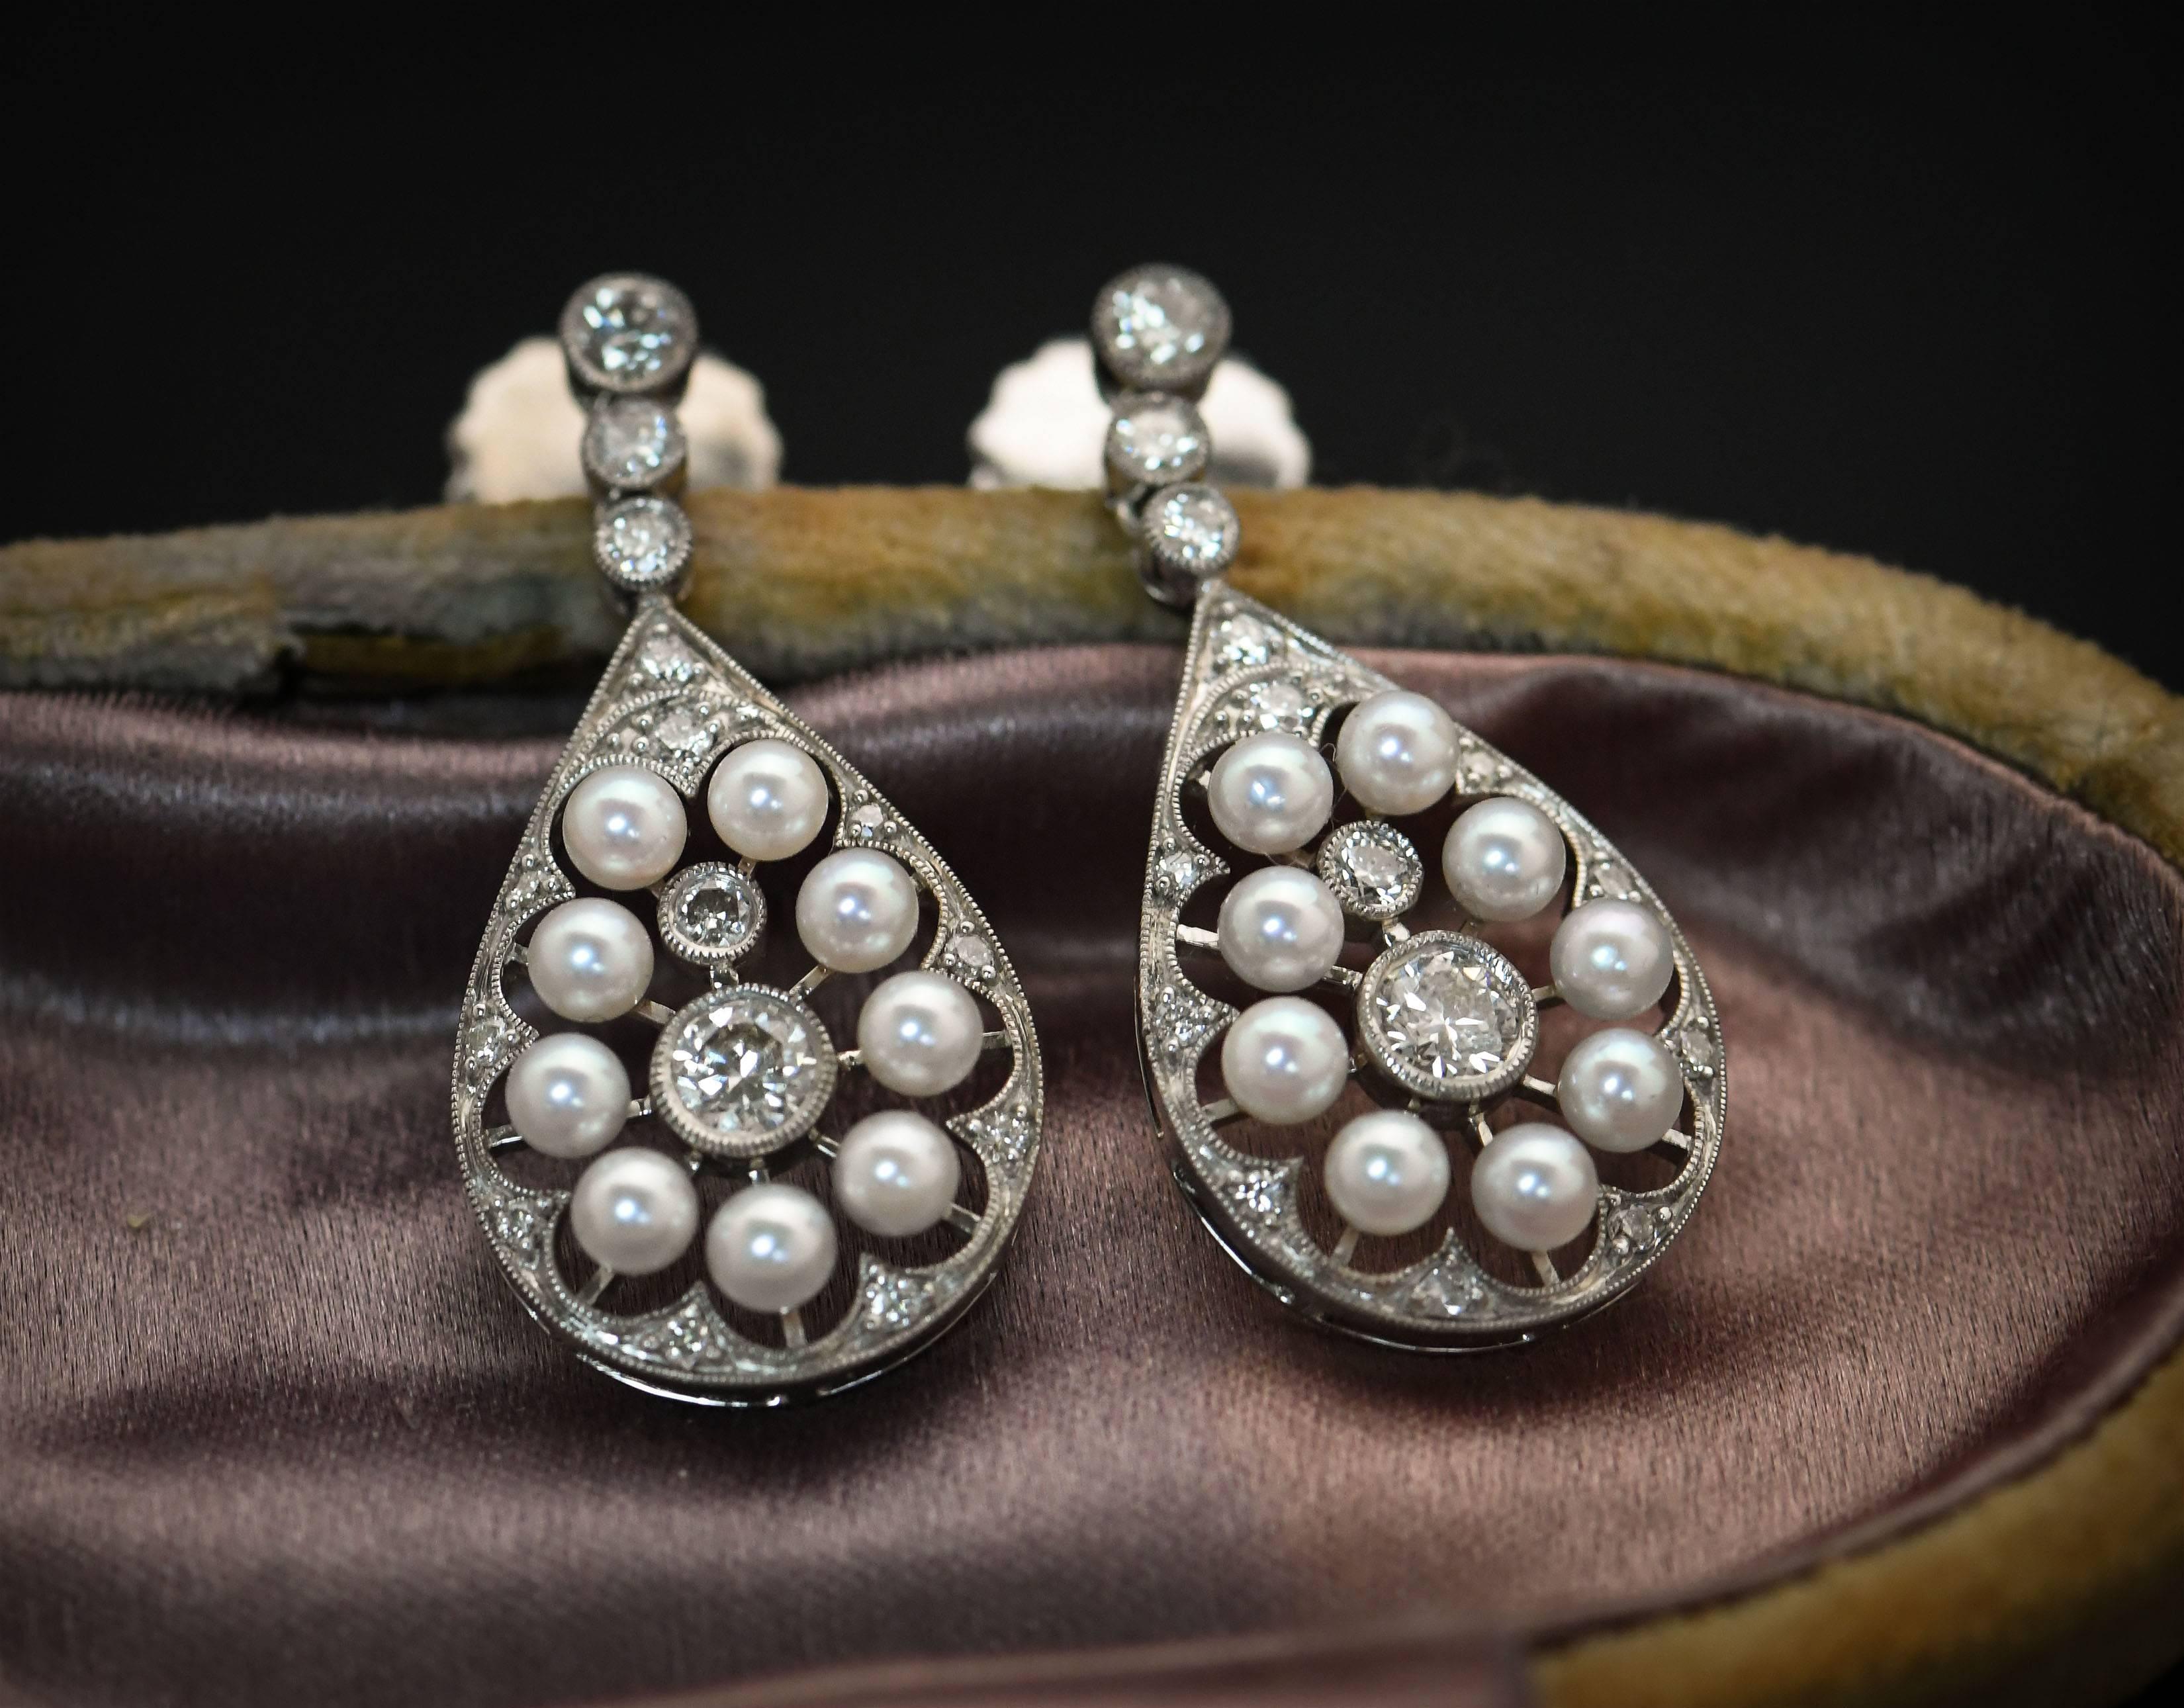 edwardian style earrings